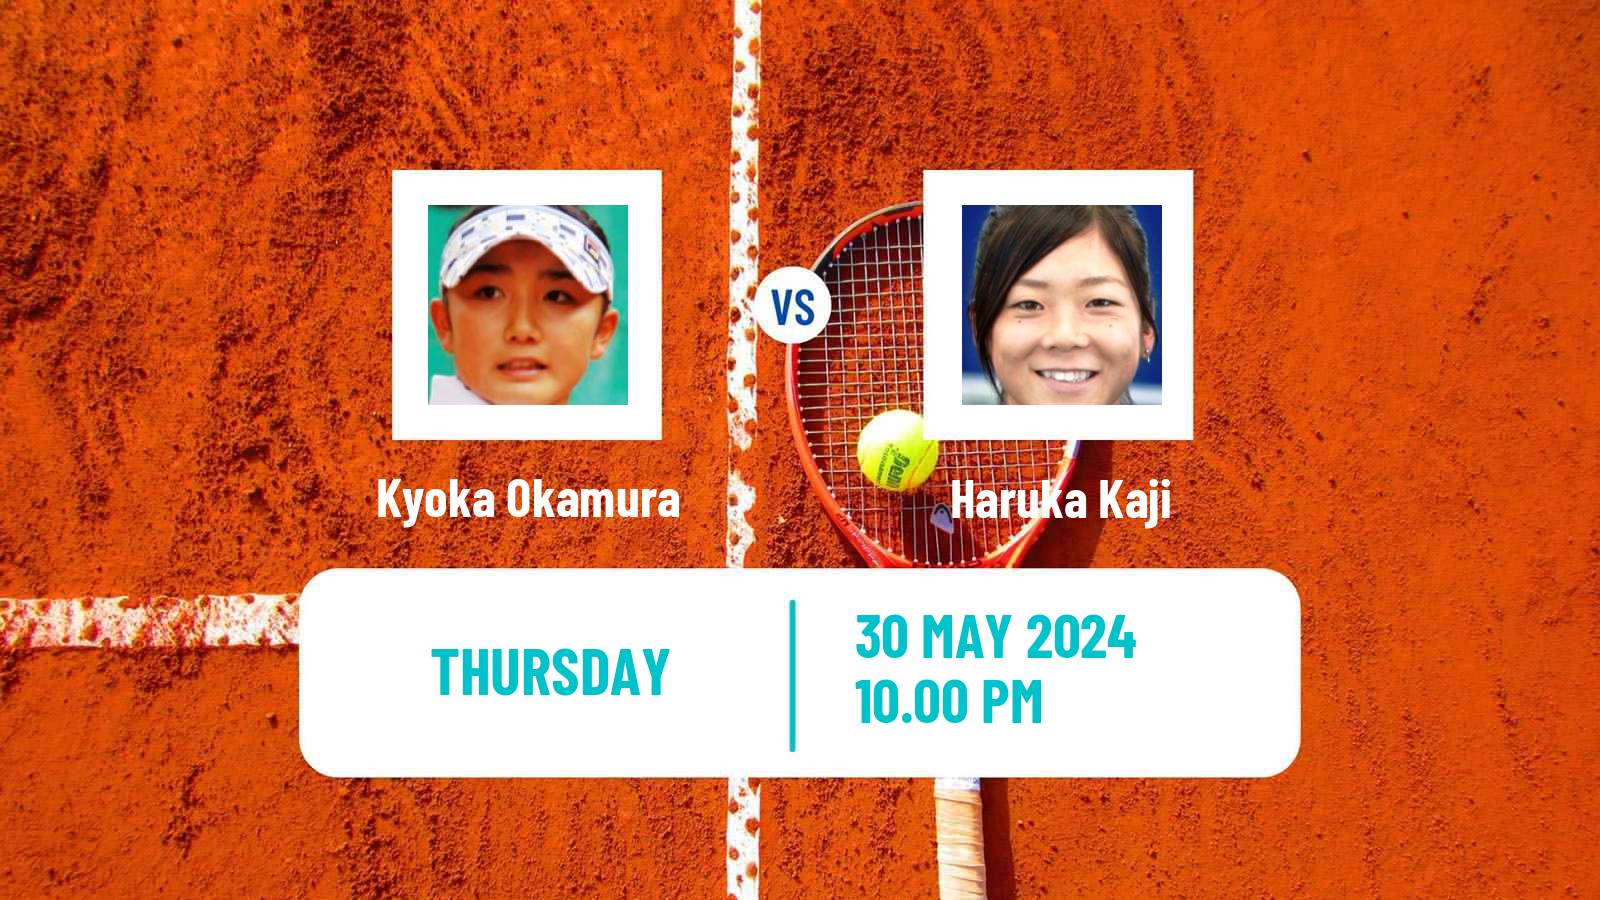 Tennis ITF W35 Changwon Women Kyoka Okamura - Haruka Kaji